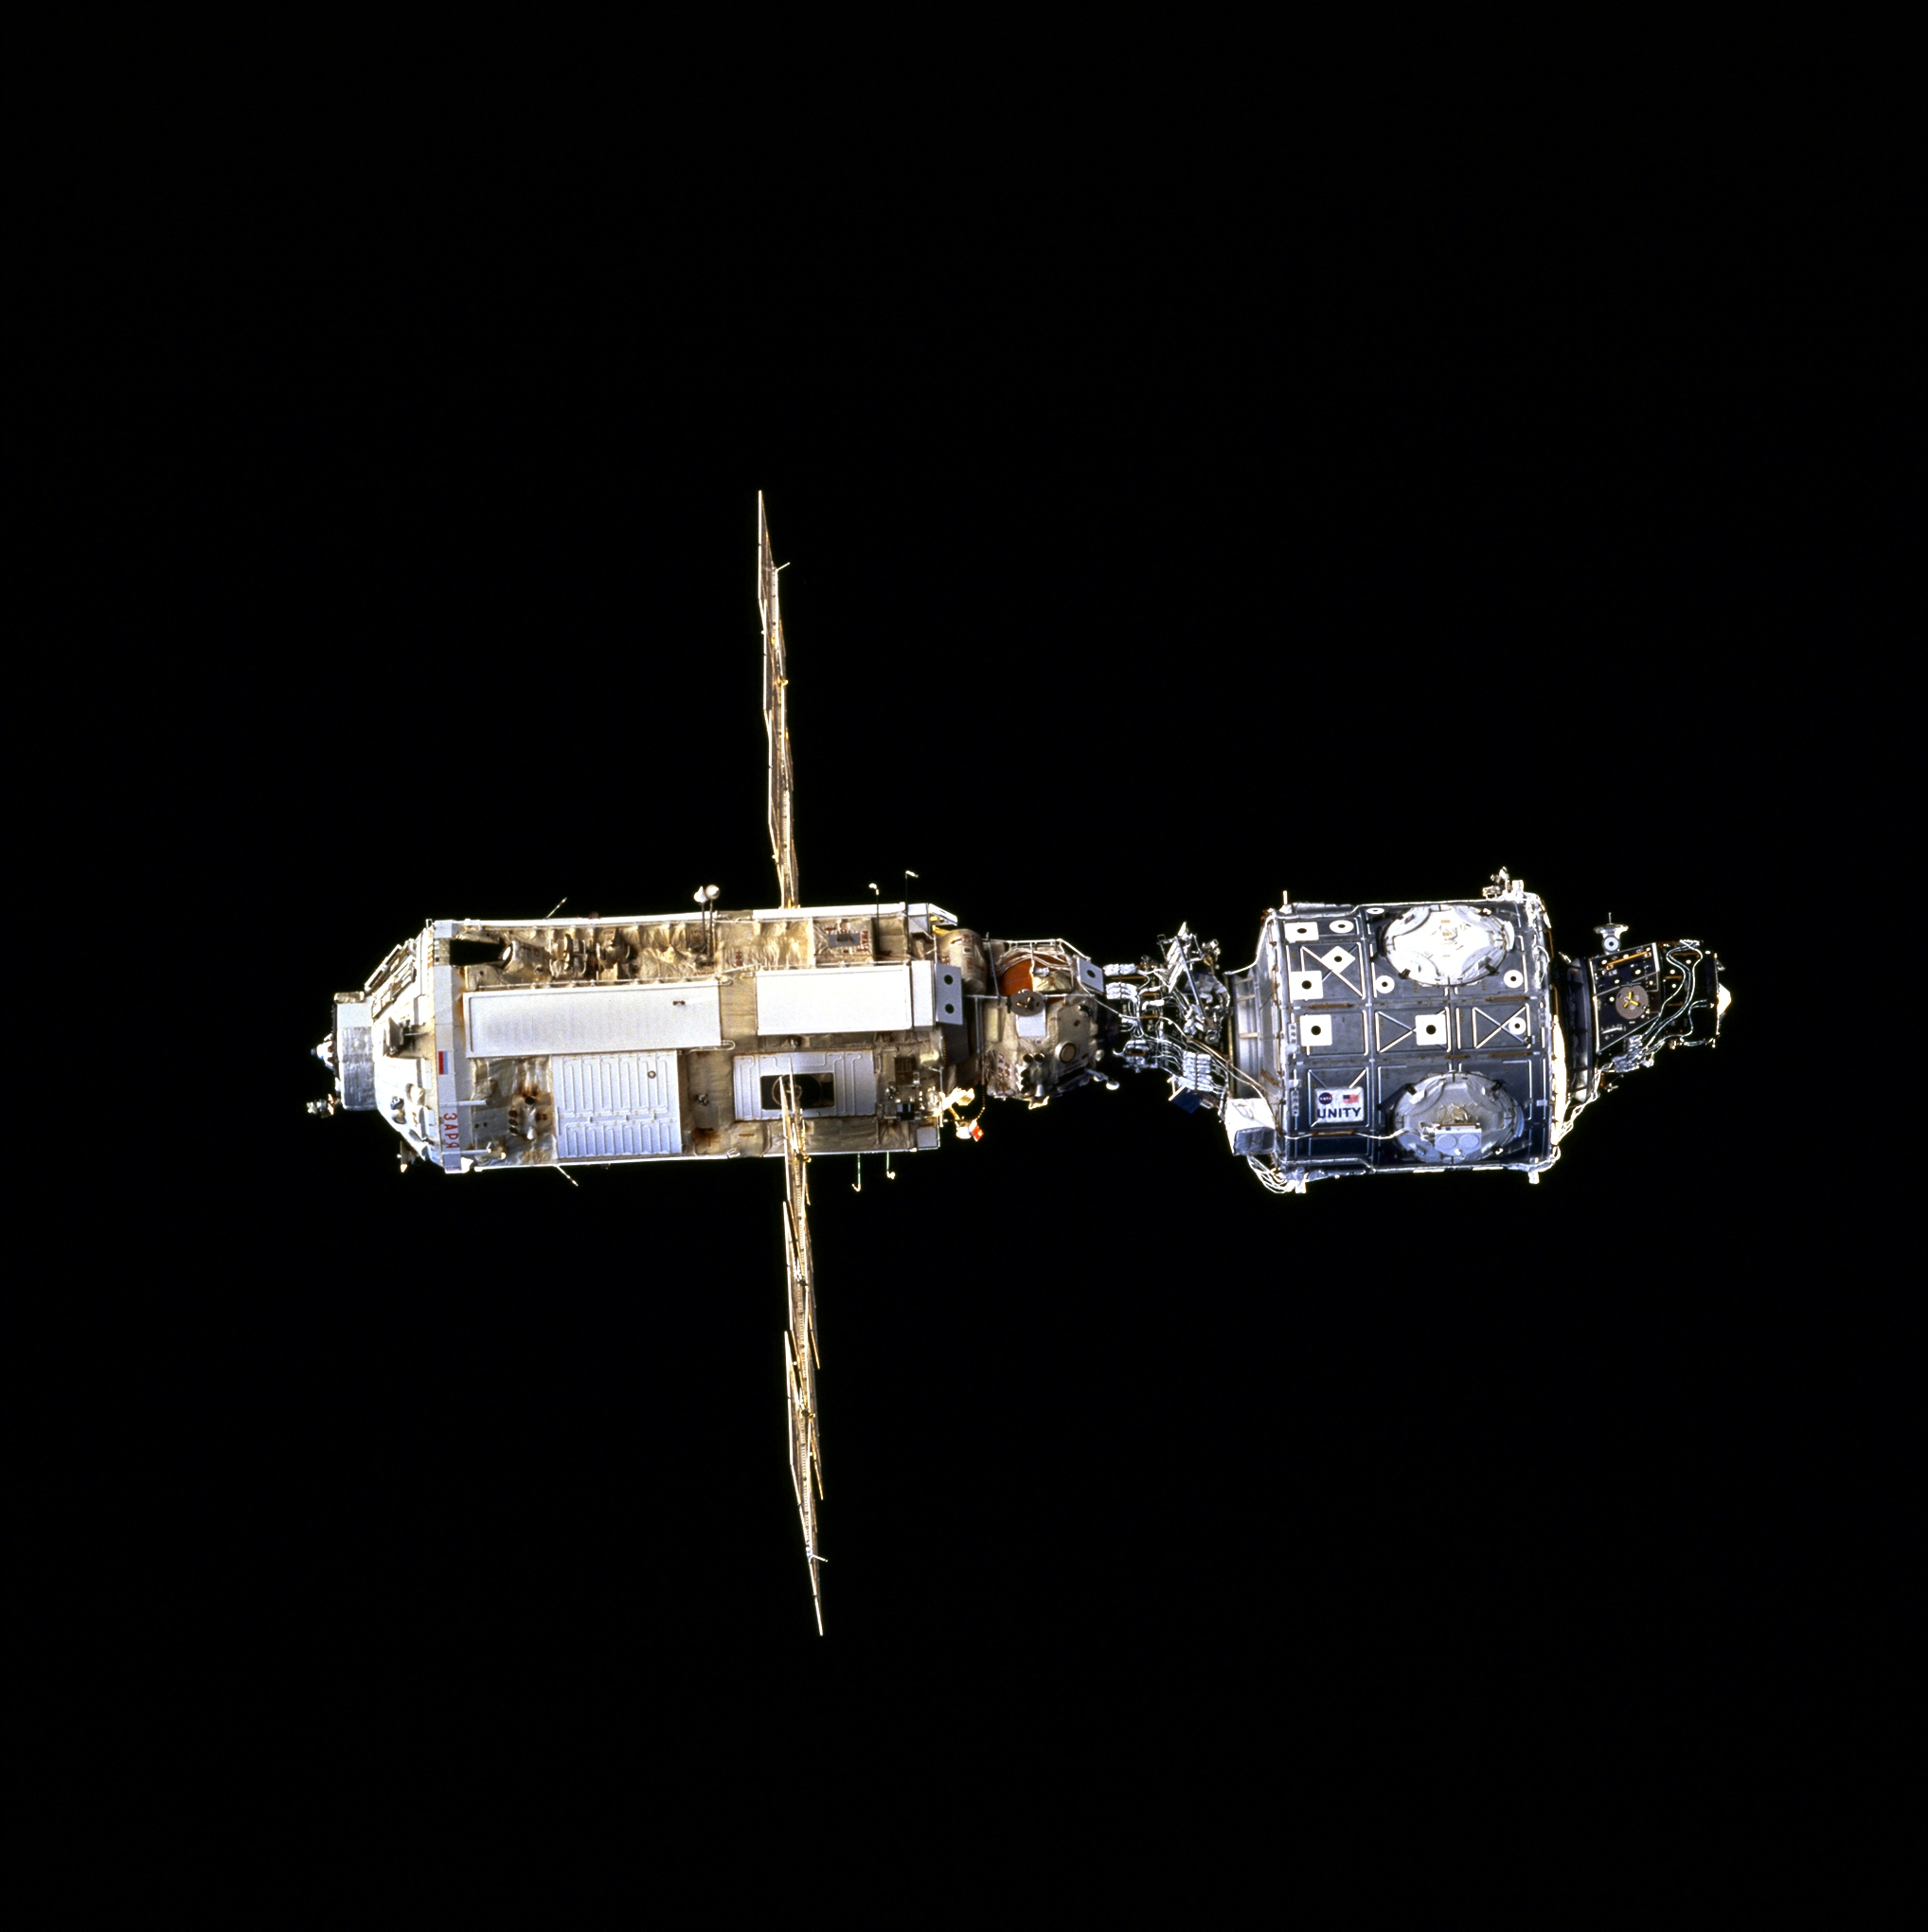 Az első két modul, az orosz Zarja és az amerikai Unity, amint magányosan sodródik a Föld körül...<br>(fotók: NASA, ESA)